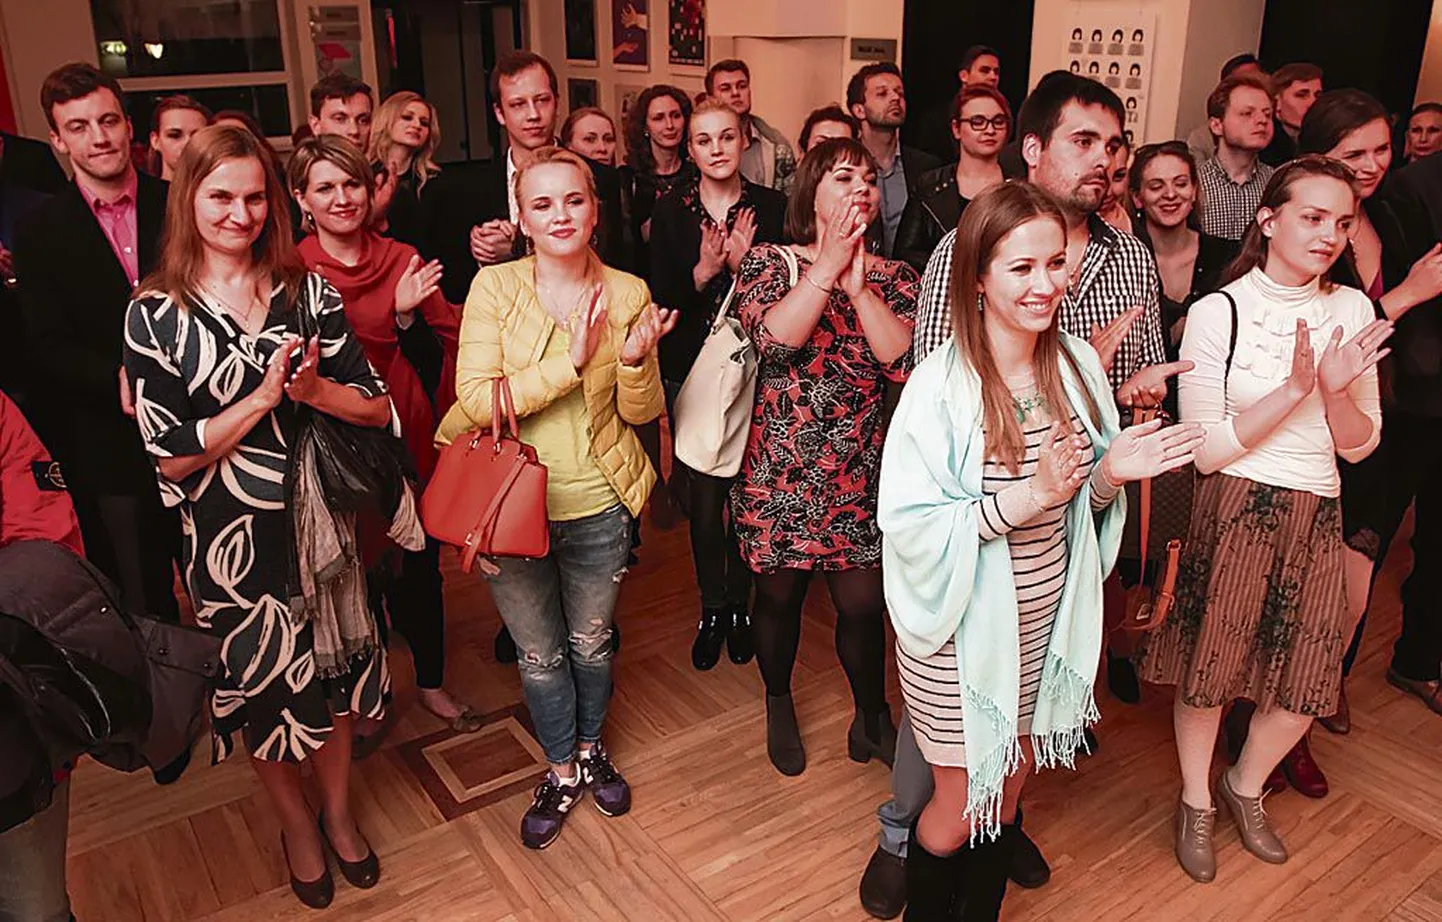 Märtsis konkursile pürginud 132 lauljast jätkas Pärnus järgmistes voorudes 36 andekat noort solisti, kellest omakorda jõudis finaali kuus parimat. Fotojäädvustus on tehtud Endlas esinemisjärjekorra loosimiselt.